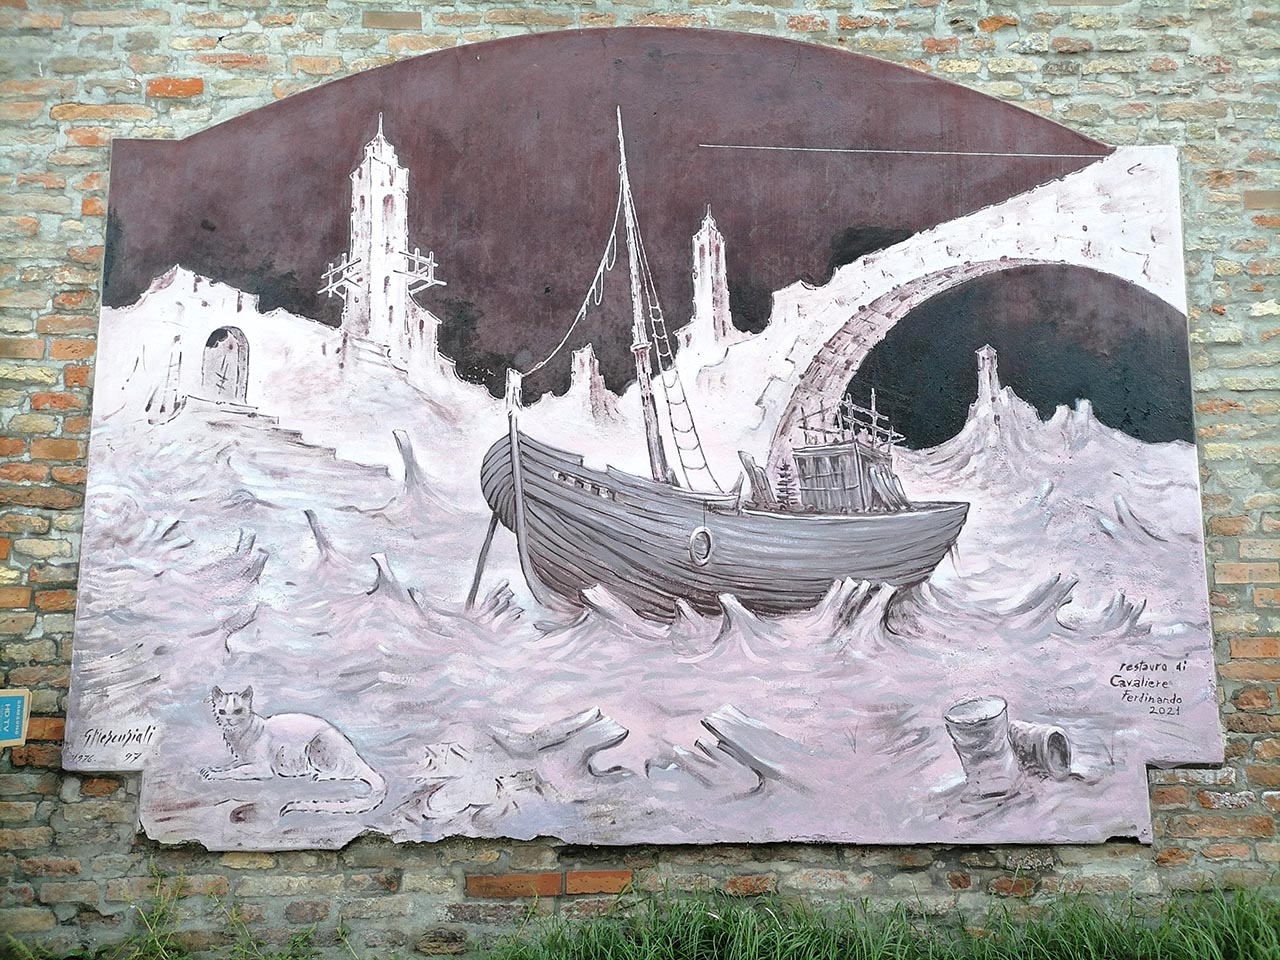 Il murale nel centro storico di Cesenatico firmato da Gastone Mercuriali, della serie dedicata ai "relitti", che è stato oggetto del recente restauro da parte di Ferdinando Cavaliere.